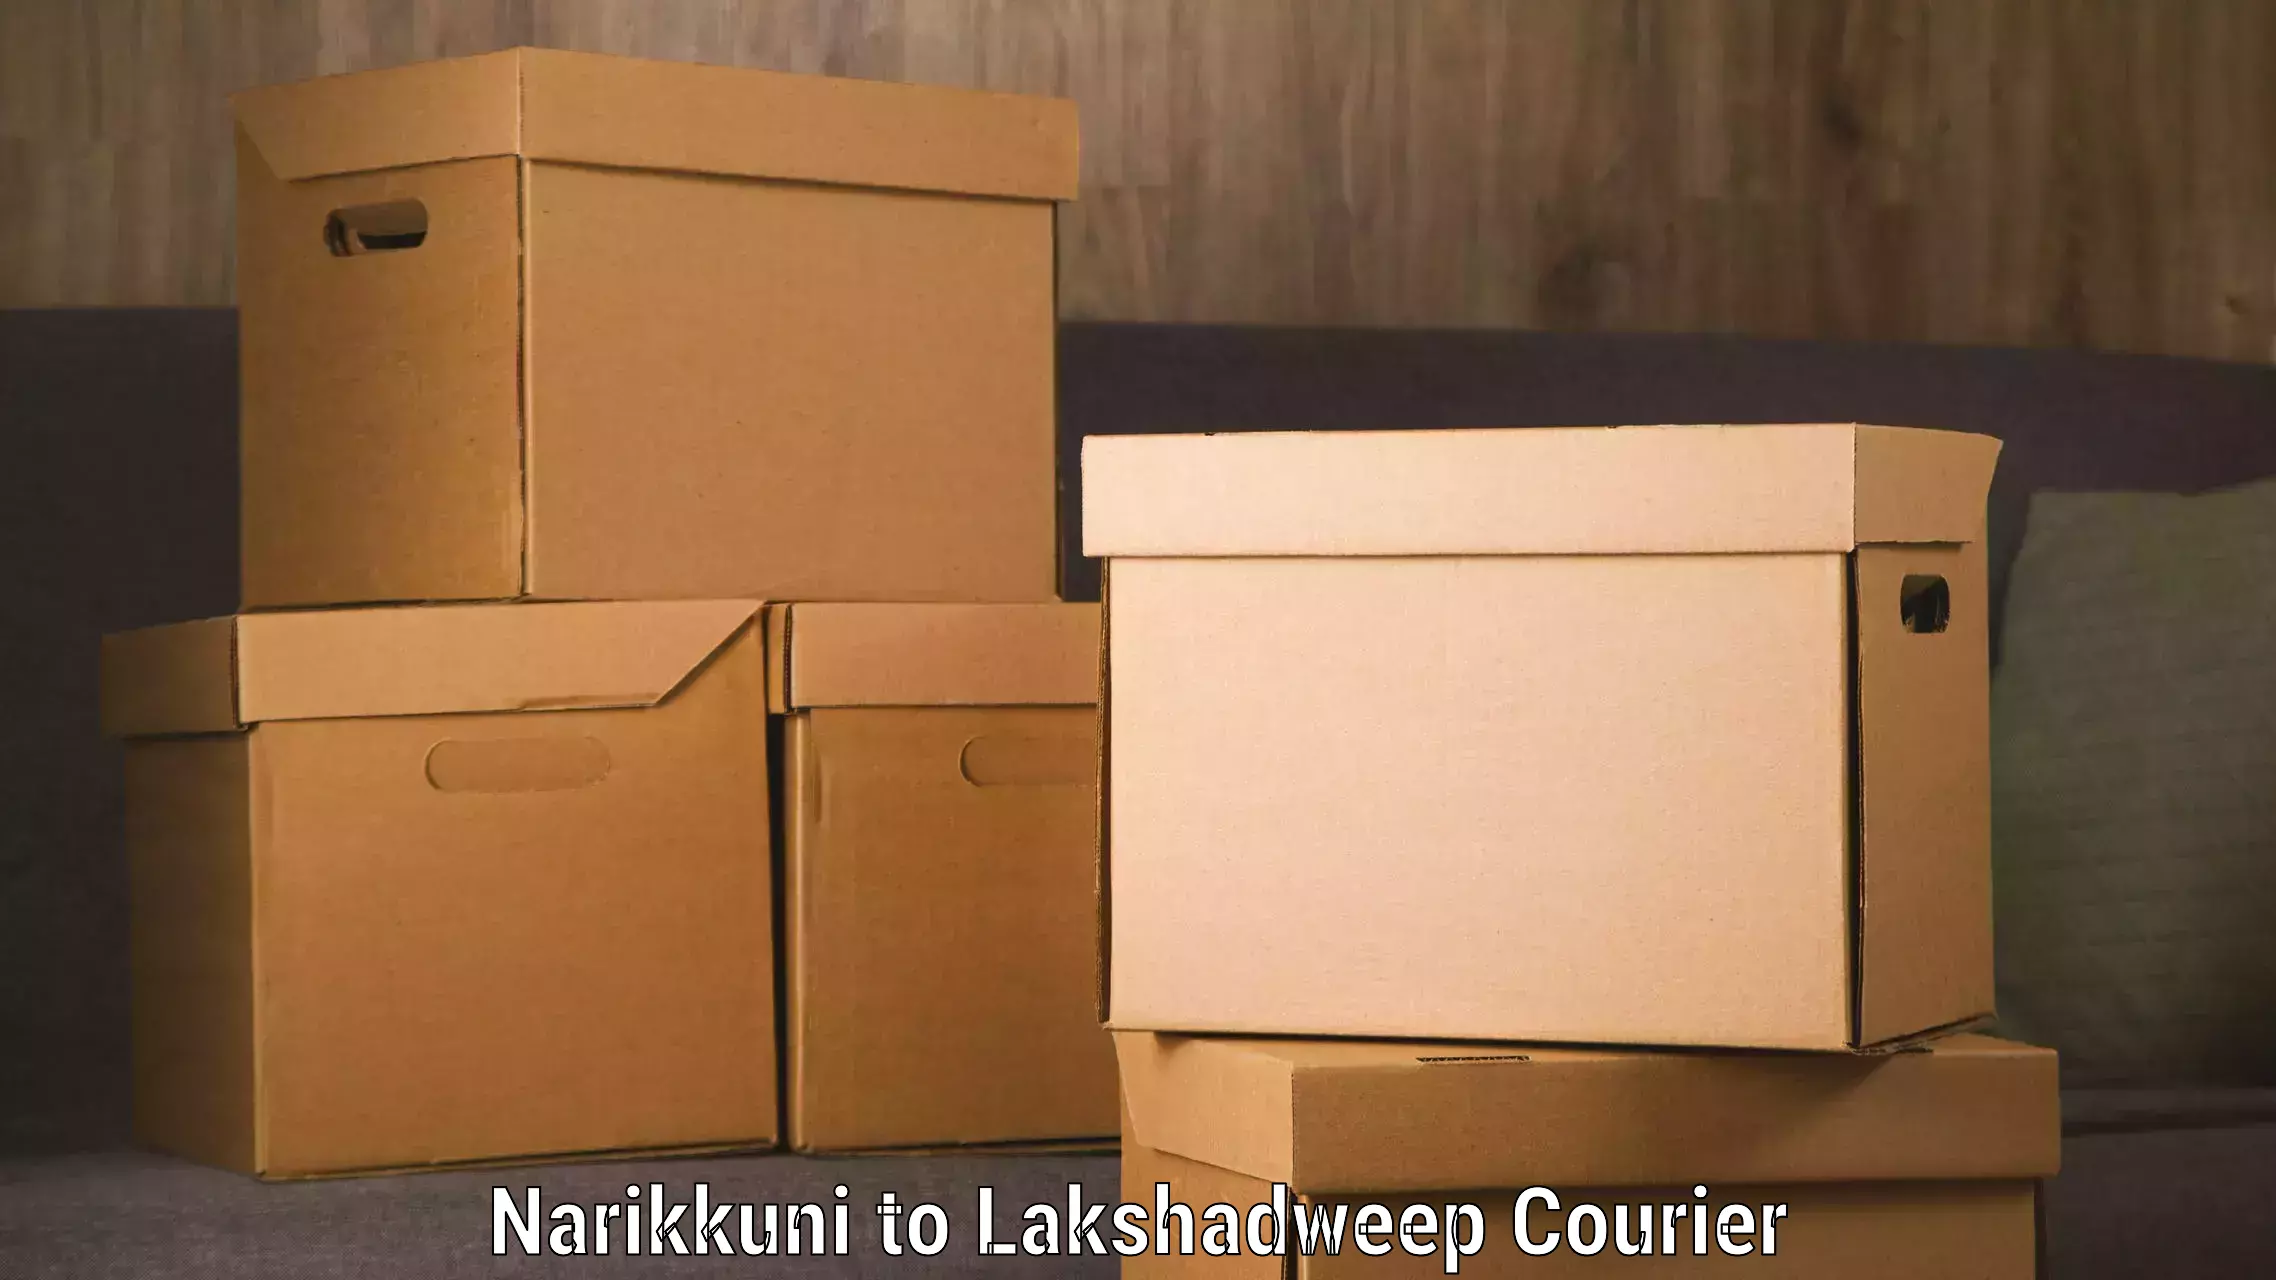 Door-to-door freight service Narikkuni to Lakshadweep